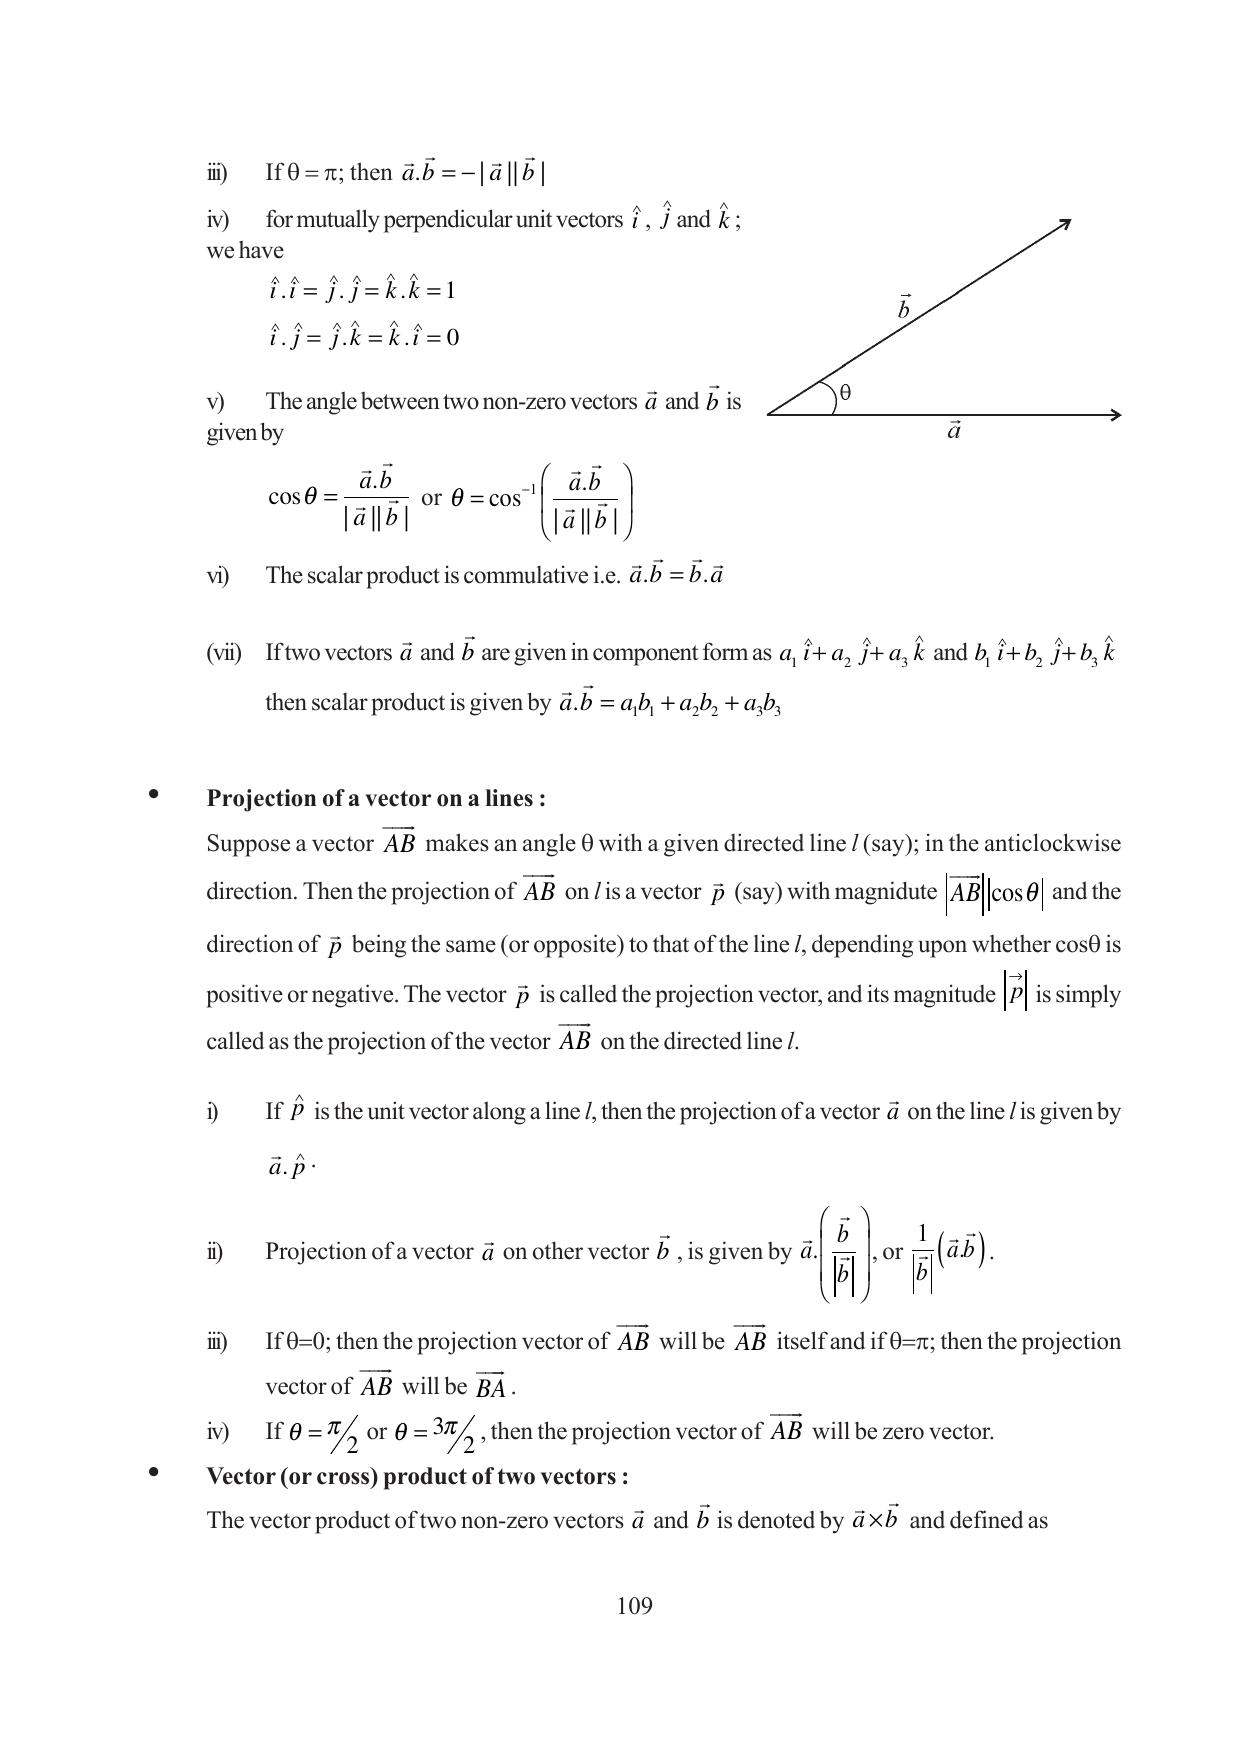 Tripura Board Class 12 Mathematics English Version Workbooks - Page 109